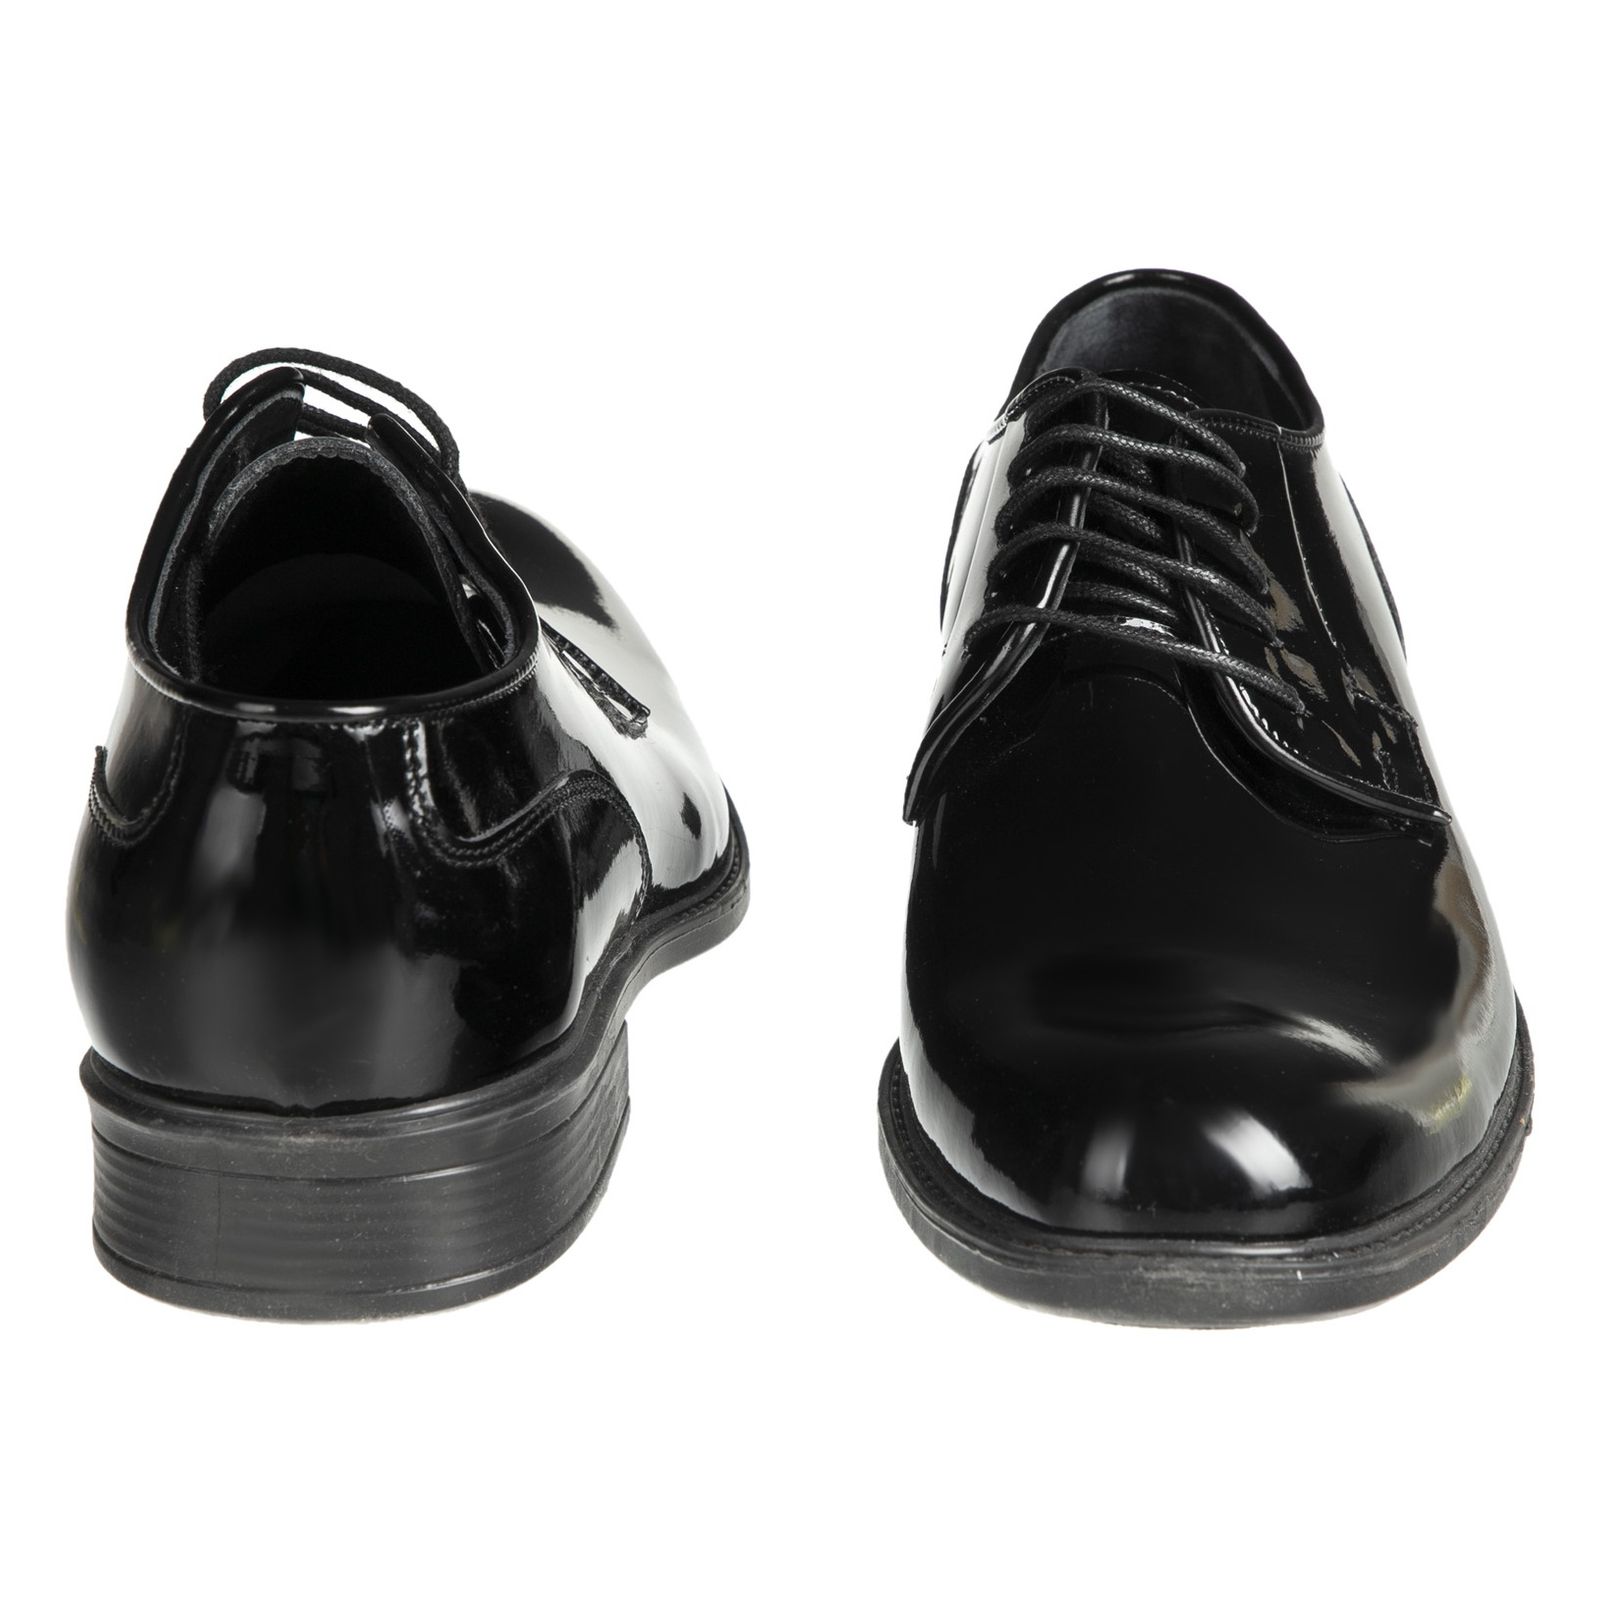 کفش مردانه دلفارد مدل 7219e503-101 - مشکی - 5